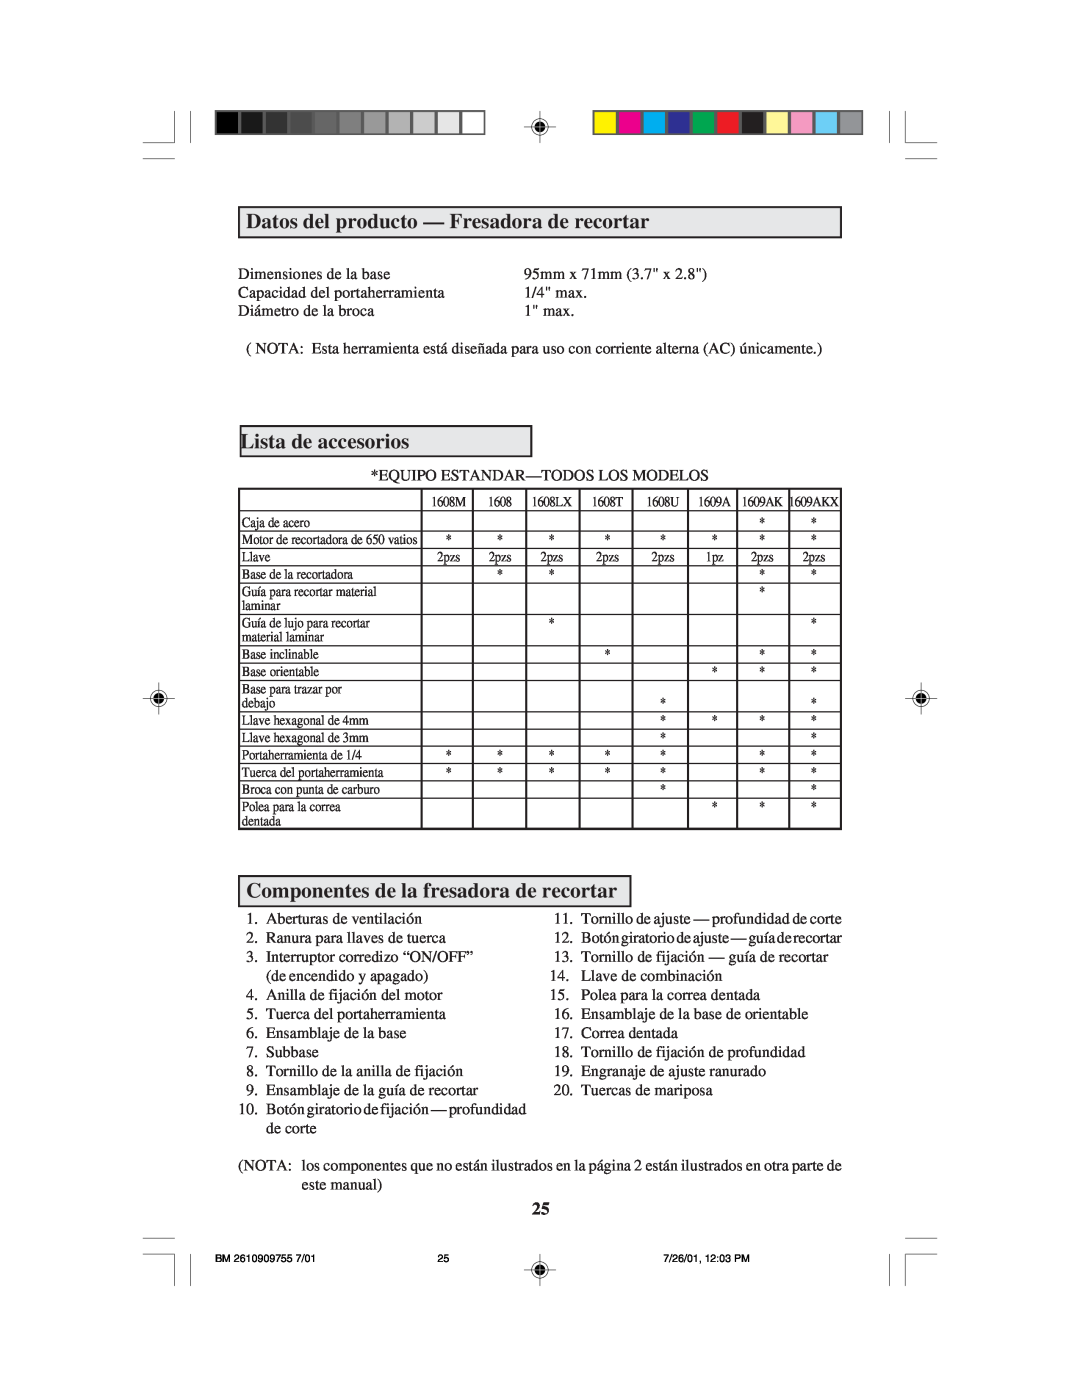 Bosch Power Tools 1608LX instruction manual Datos del producto - Fresadora de recortar, Lista de accesorios 